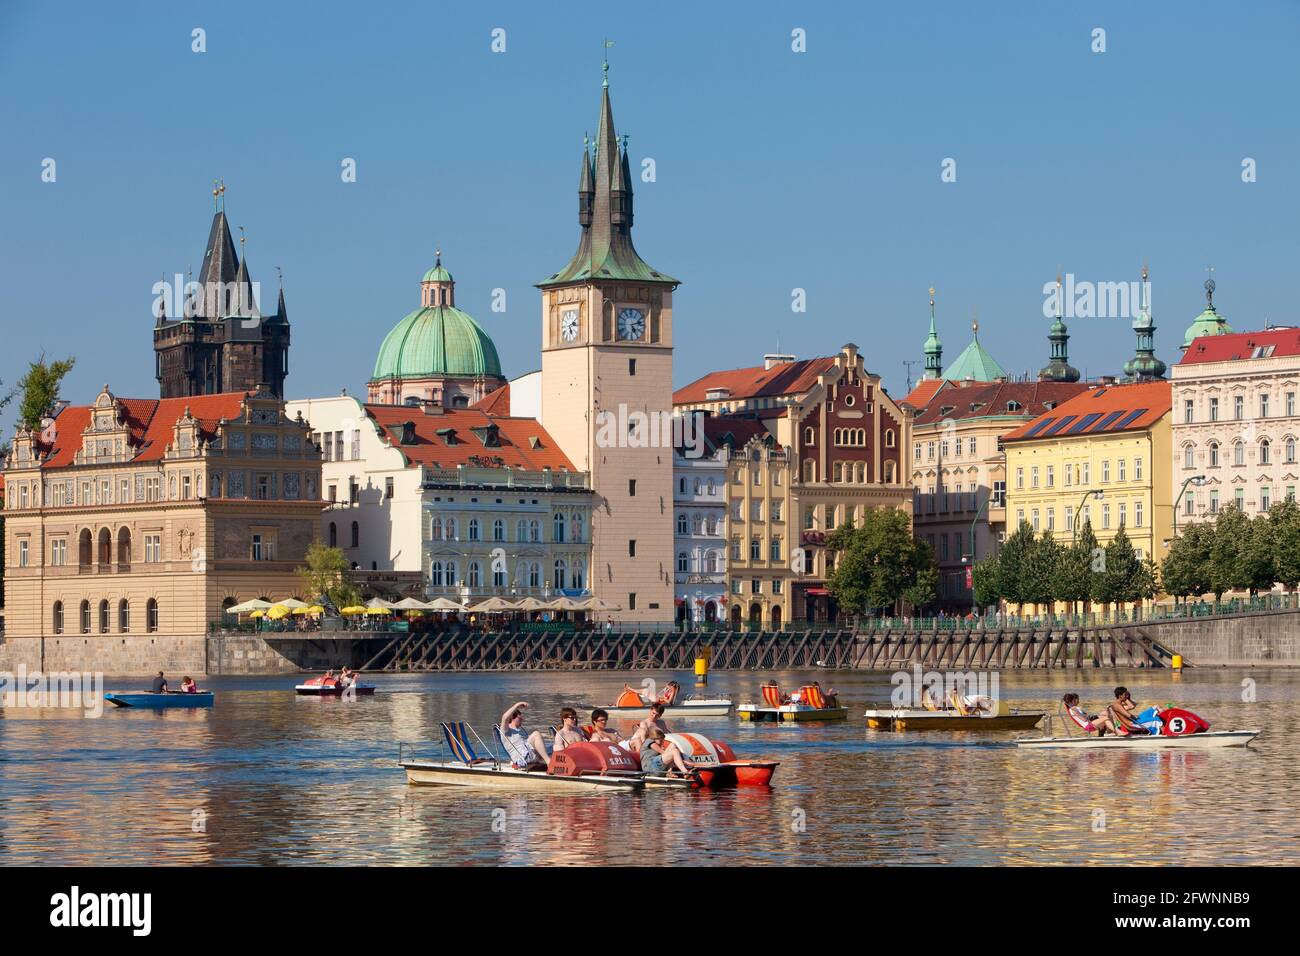 Praga - Novotneho Lakva, museo smetanovo, torres de la vieja ciudad y barcos Foto de stock